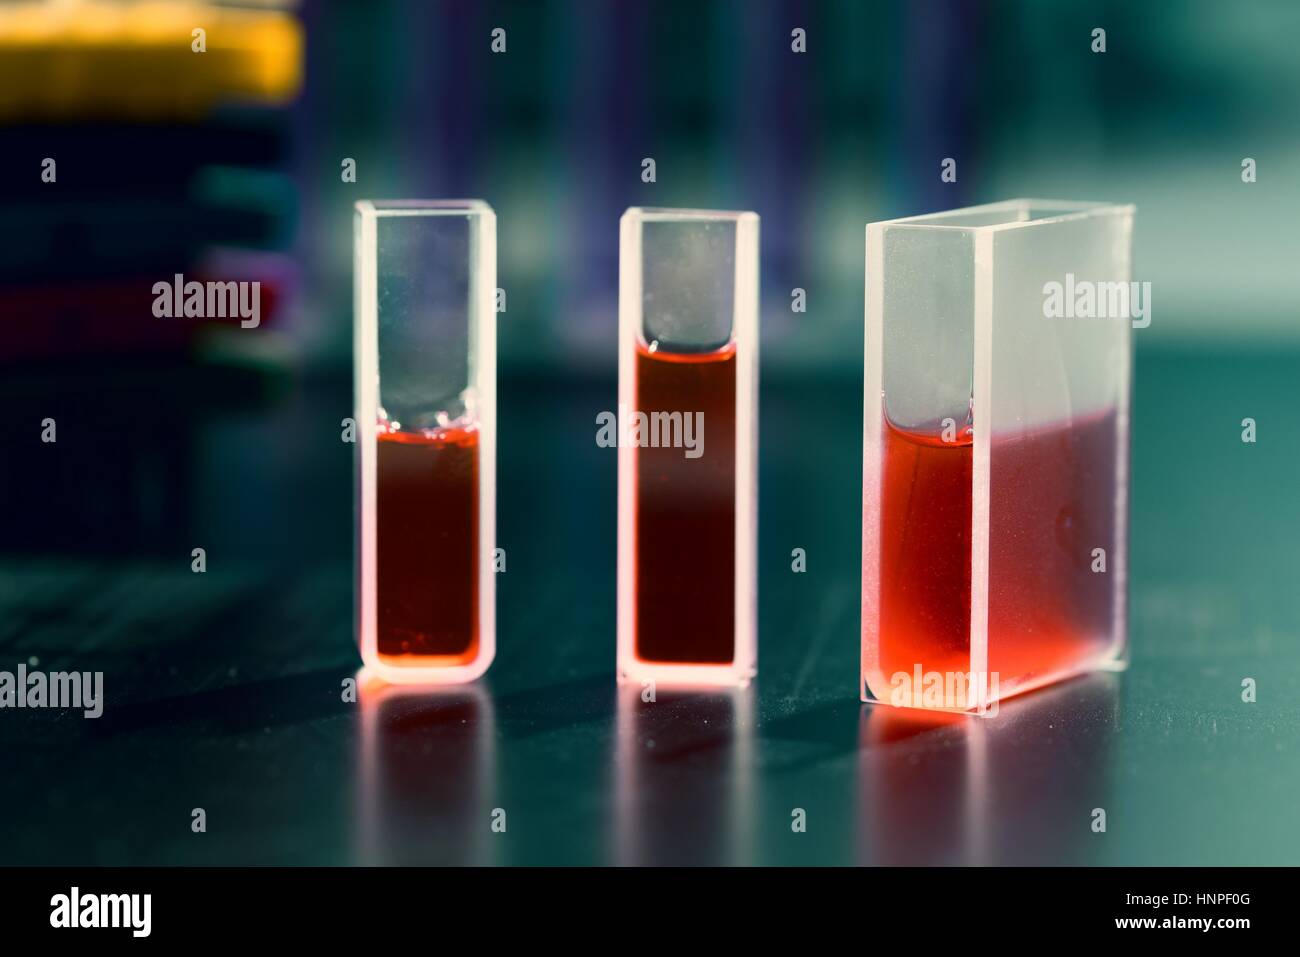 Quarz-Küvetten für Laser-Chromatographie mit roter Flüssigkeit. Physikalische Chemie-Labor Stockfoto